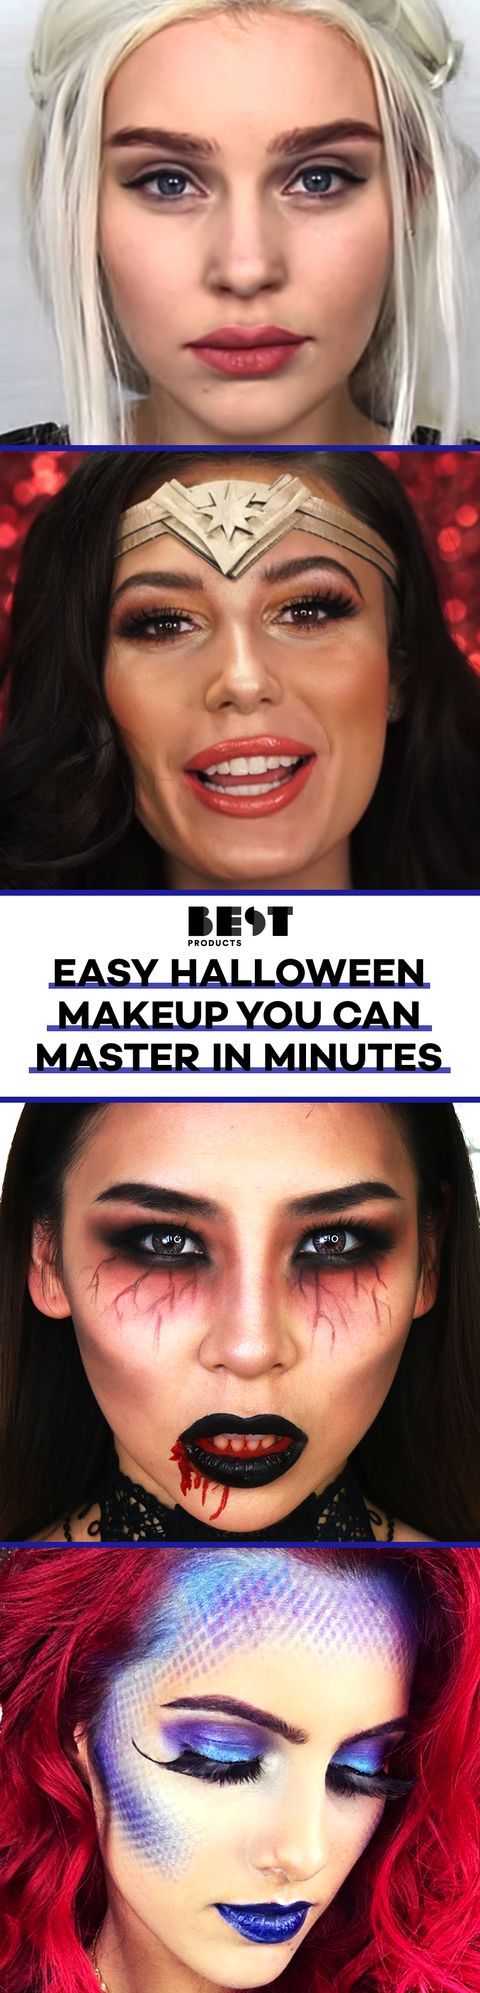 easy Halloween makeup tutorials